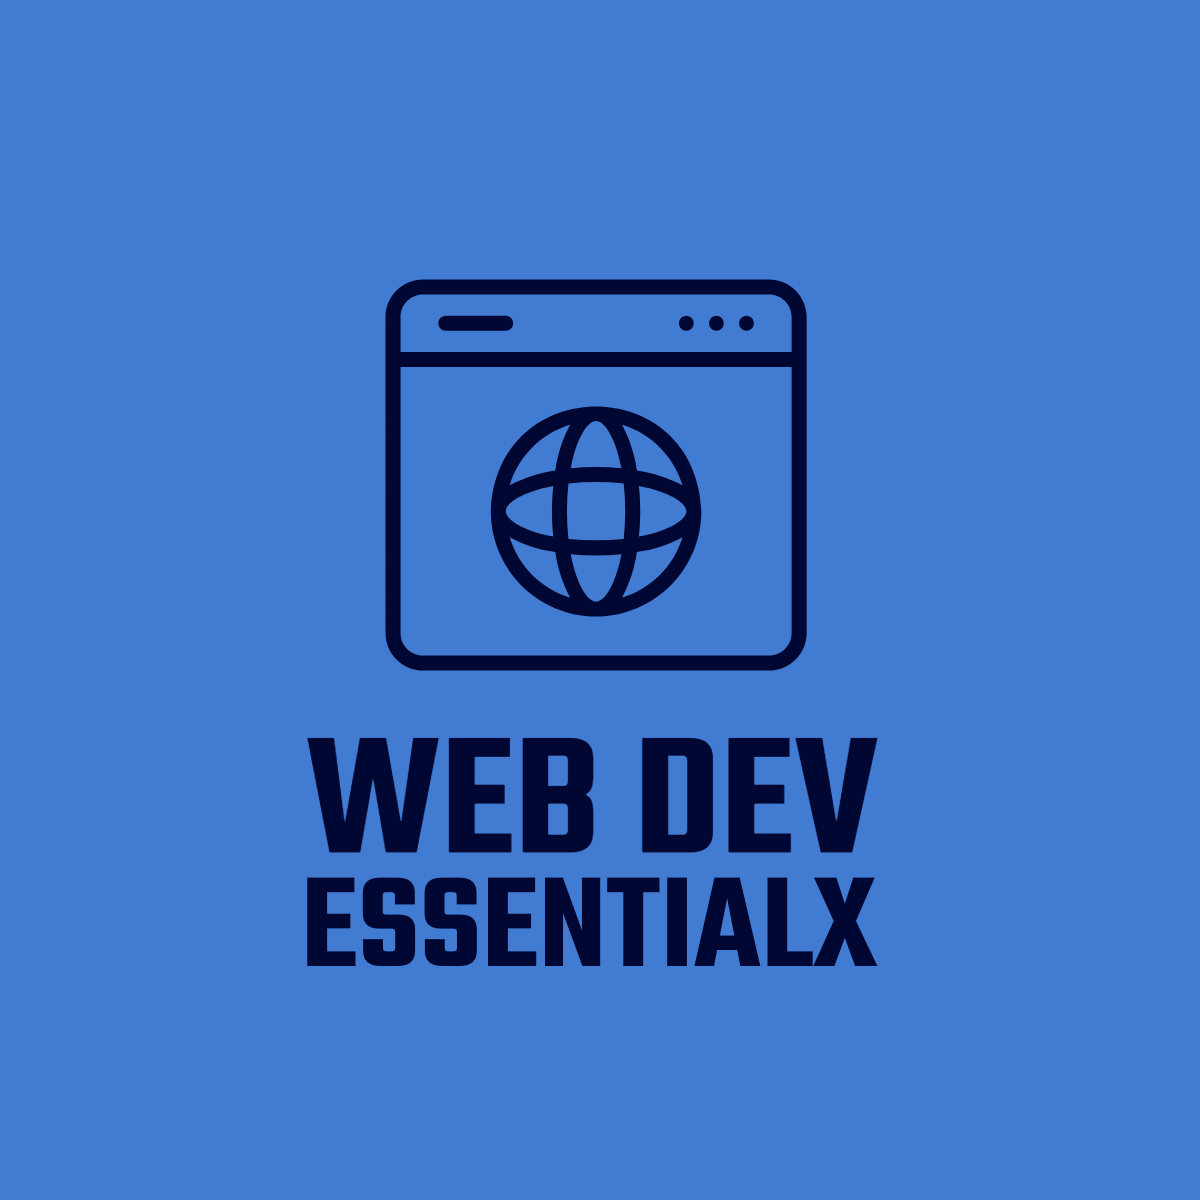 Web Dev Essentialx